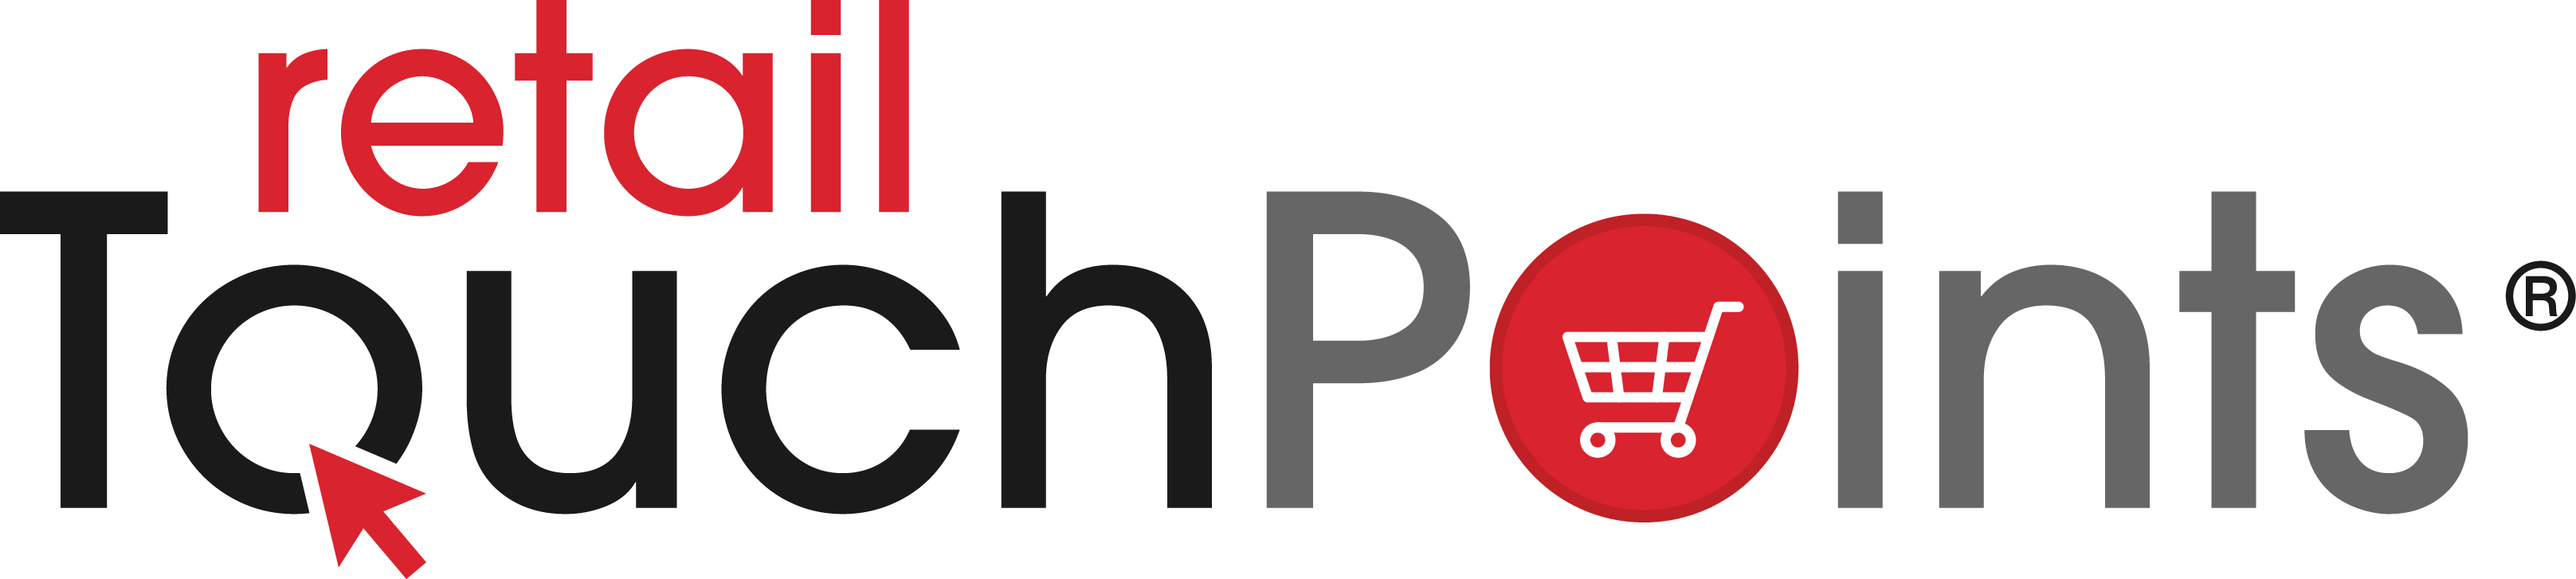 Retail TouchPoints Logo